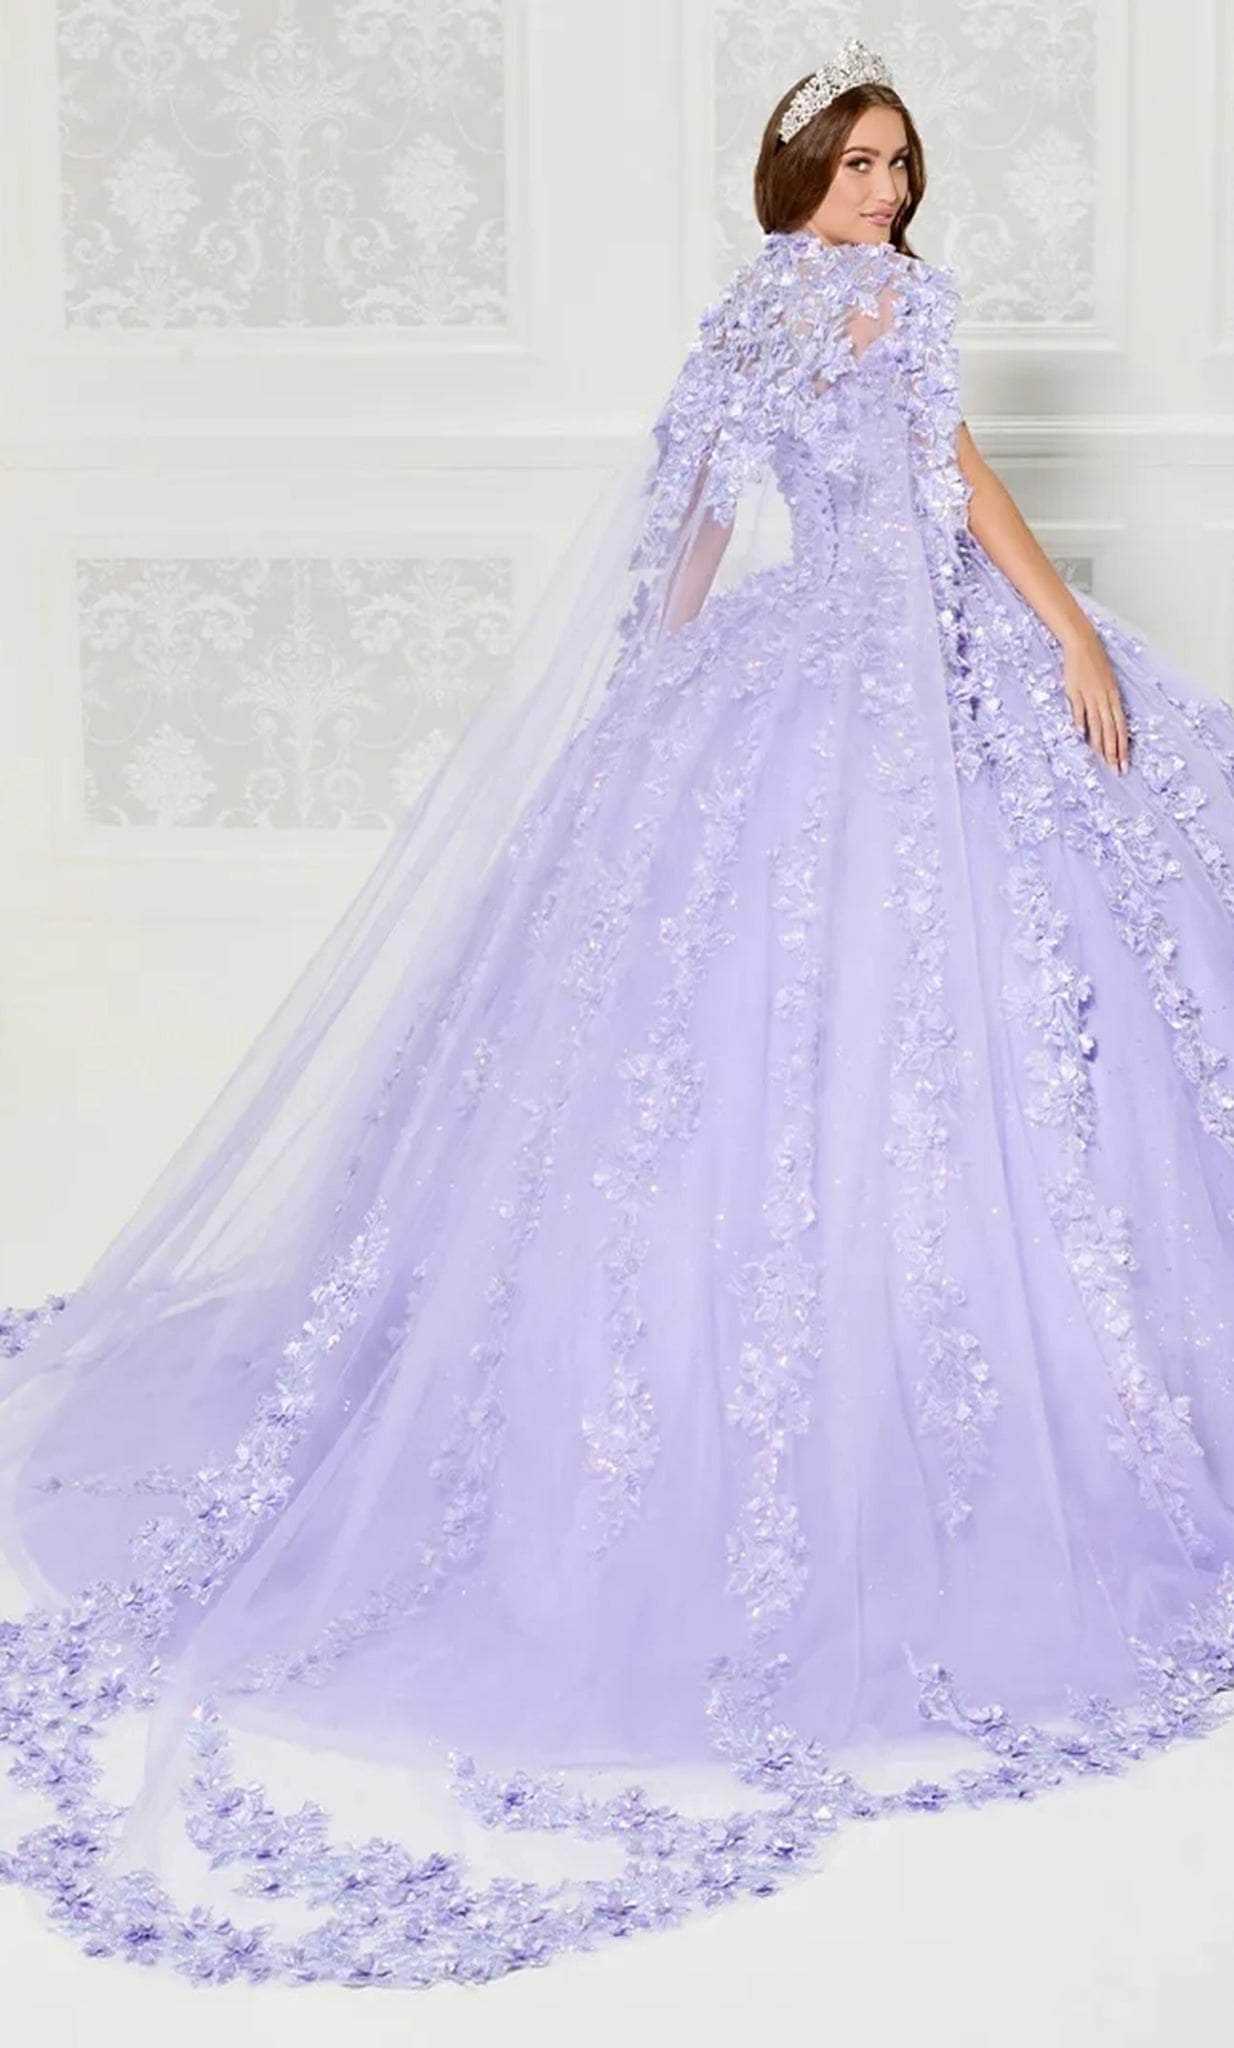 Princesa by Ariana Vara, Princesa by Ariana Vara PR30120 - Off Shoulder Floral Tulle Ballgown